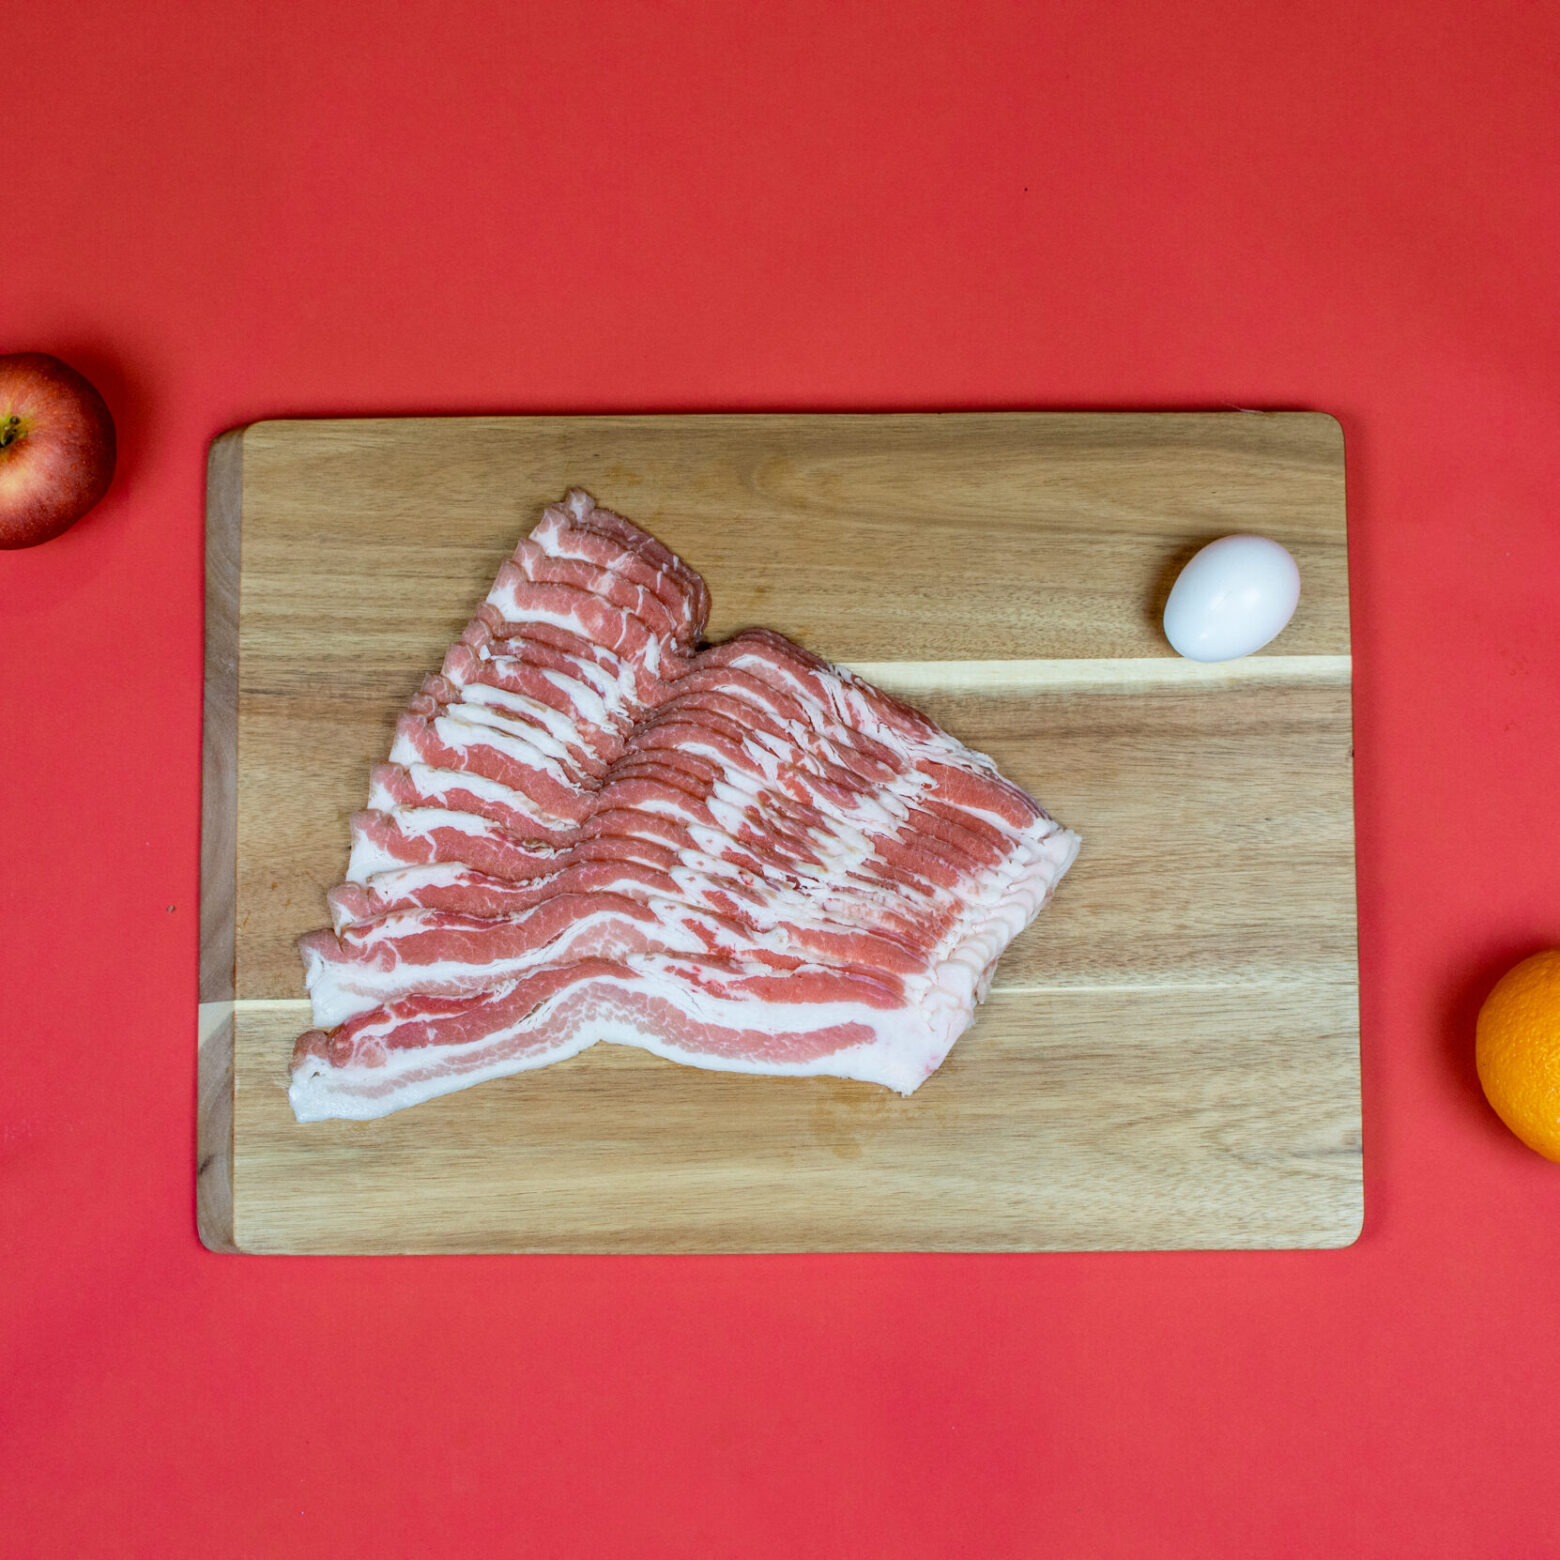 Bulk fresh side pork bacon laid out on cutting board